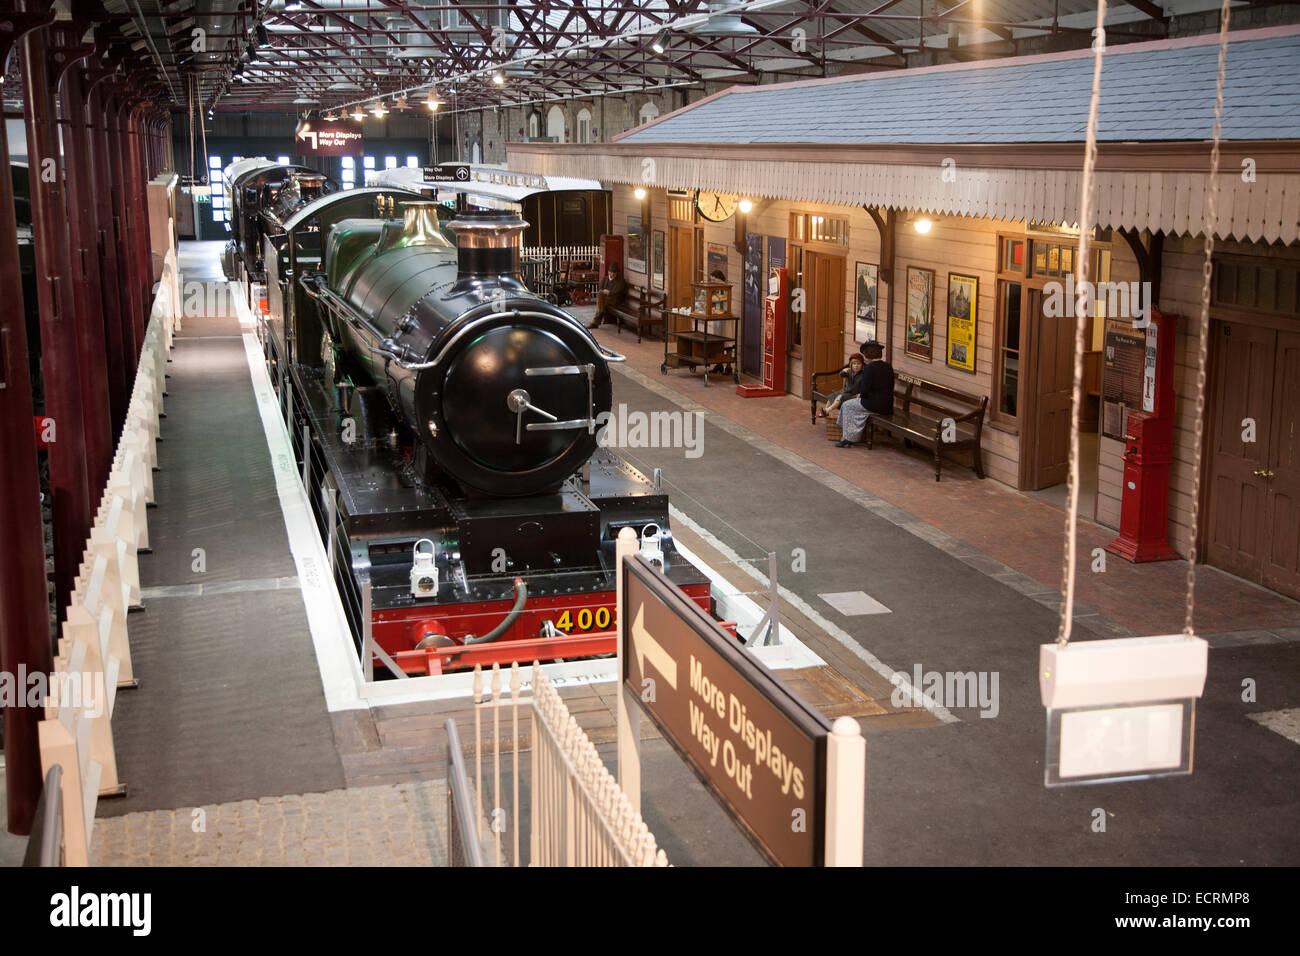 GWR il museo dei treni a vapore Swindon, England, Regno Unito Foto Stock